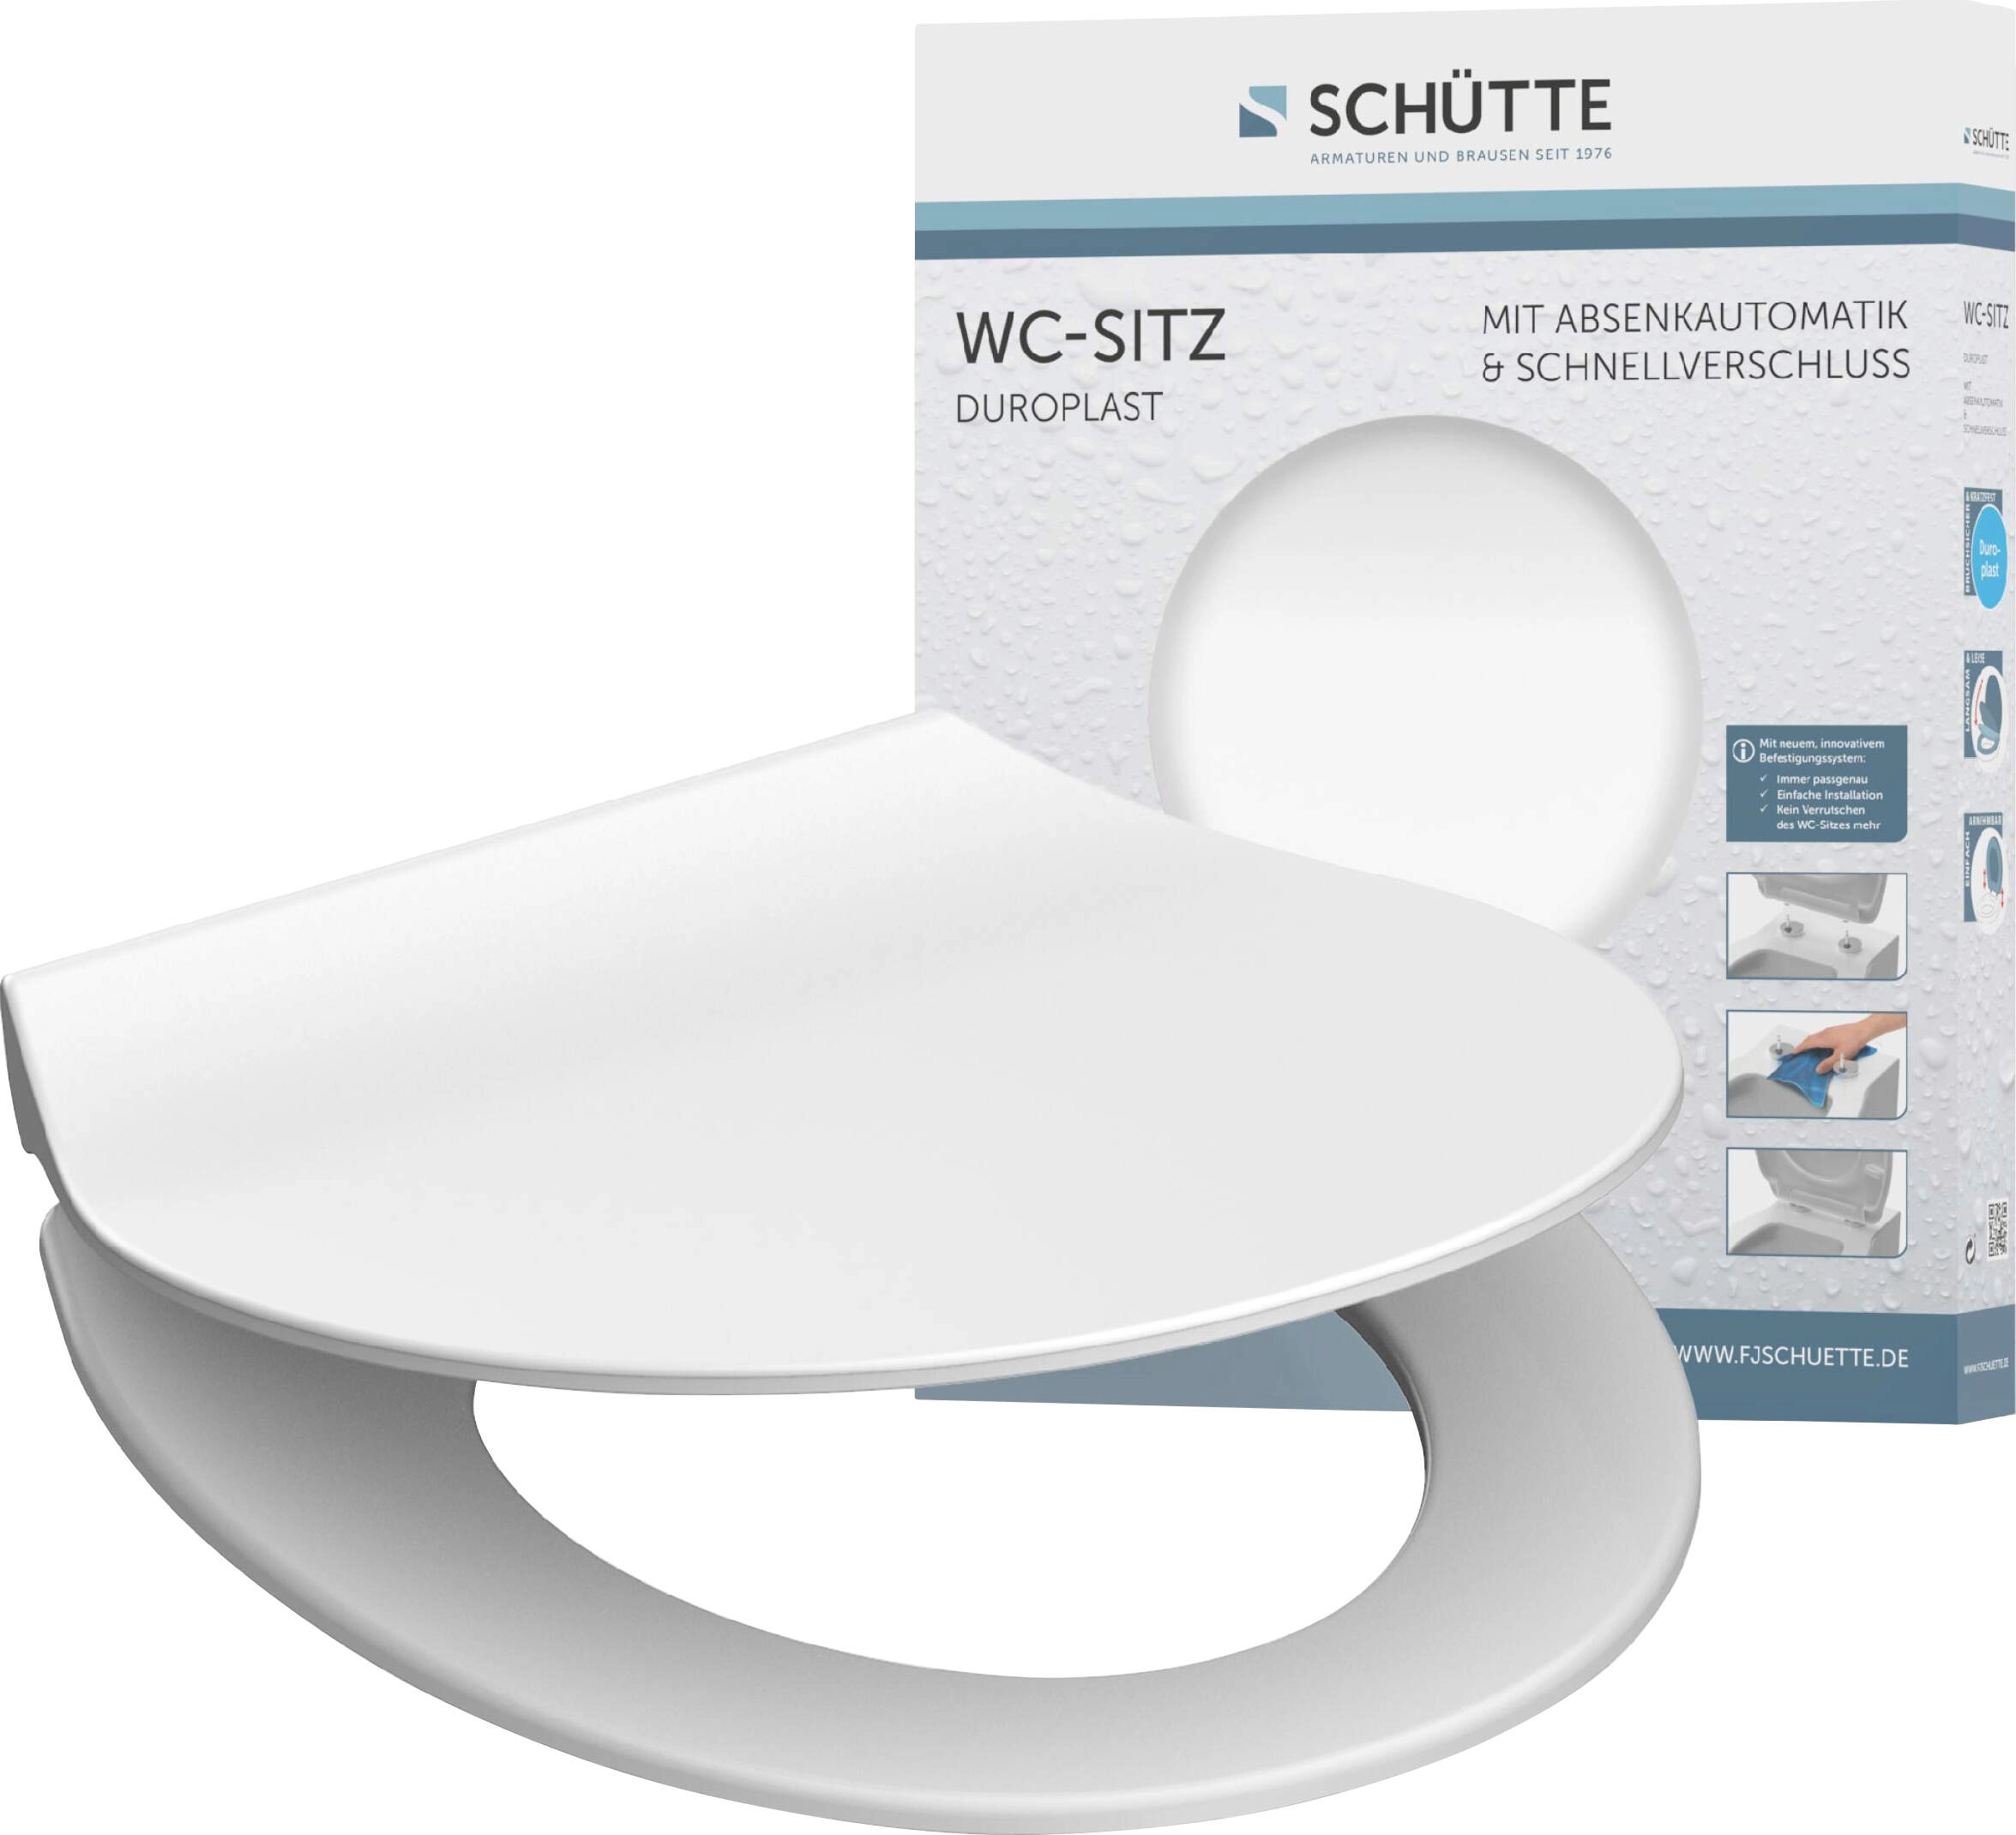 Schütte WC-Sitz Slim White Duroplast mit Absenkautomatik &  Schnellverschluss kaufen bei OBI